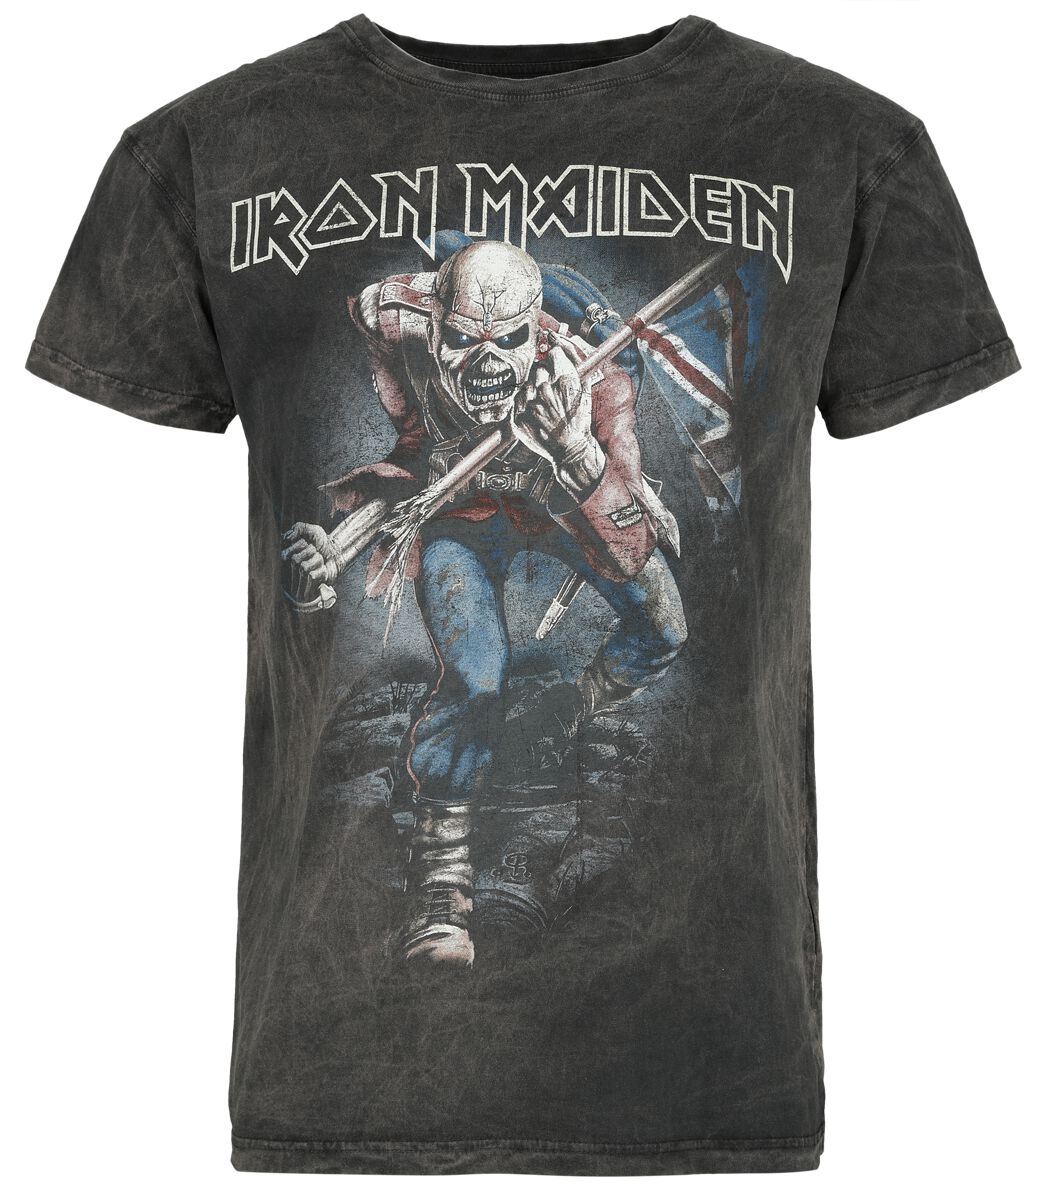 Iron Maiden T-Shirt - The Trooper - S bis 4XL - für Männer - Größe L - grau  - Lizenziertes Merchandise!